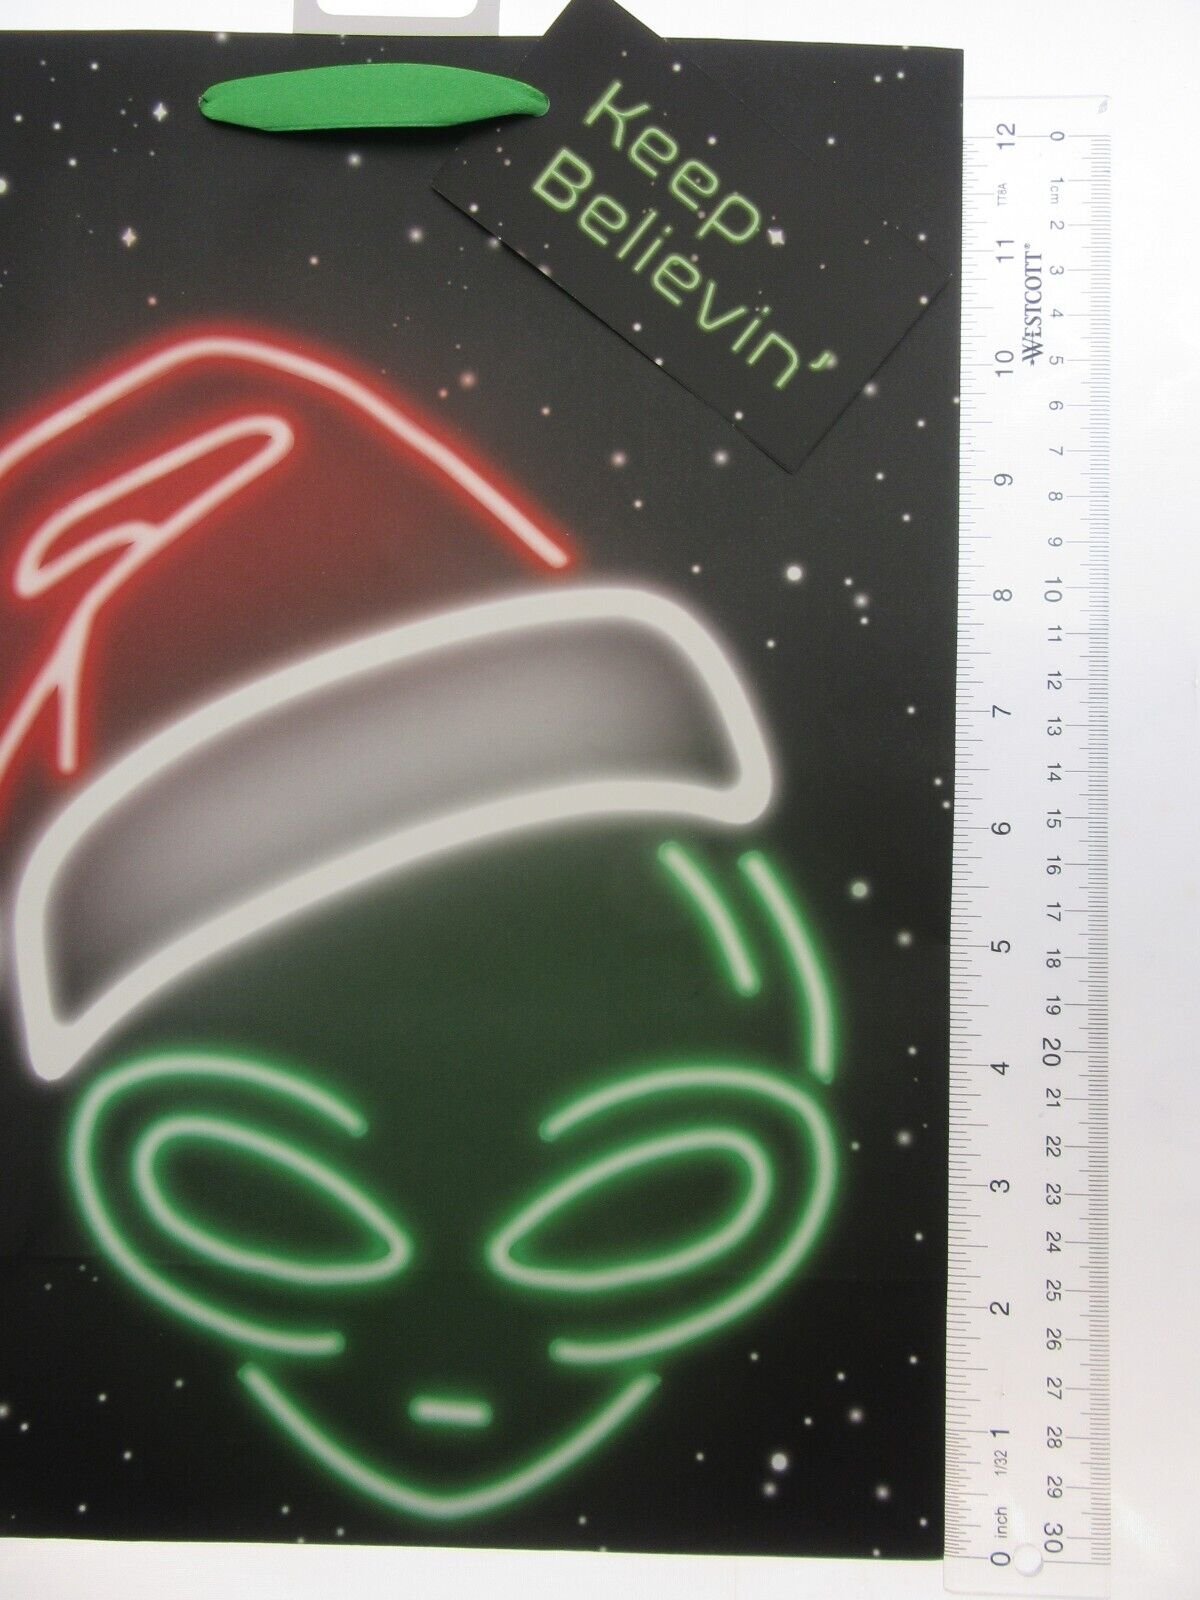 Alien in Santa Hat Gift Bags ~ Keep Believin ~ Lot of Two ~ 10" x 12.5" each